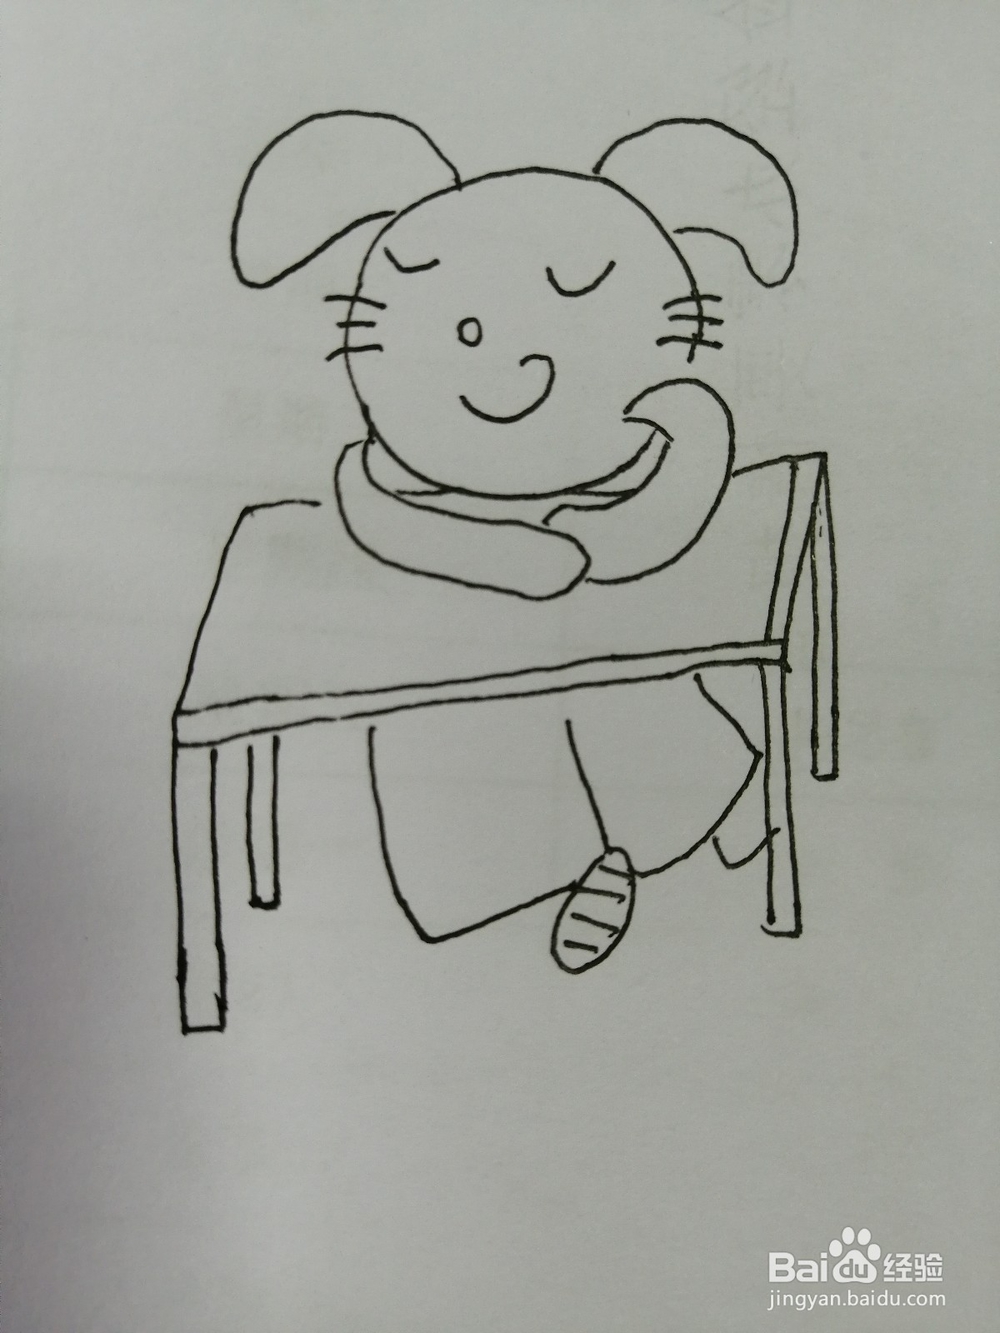 <b>书桌上睡着的小兔子怎么画</b>